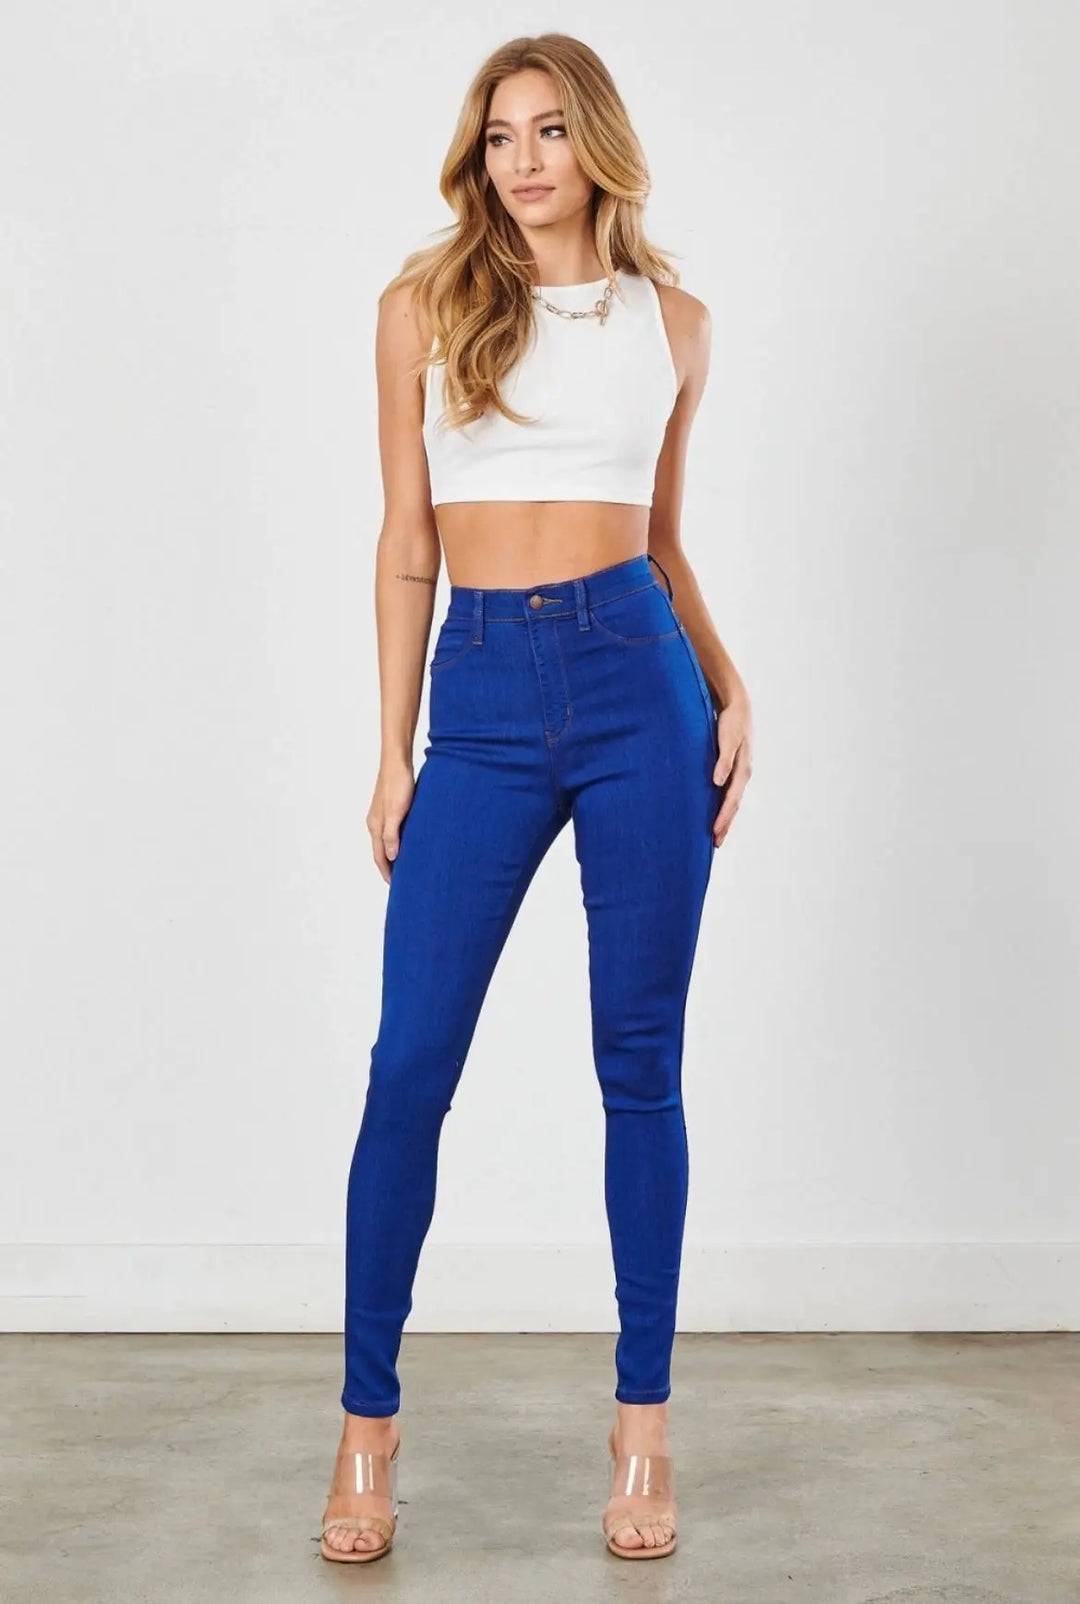 True Blue Jeans - SurgeStyle Boutique